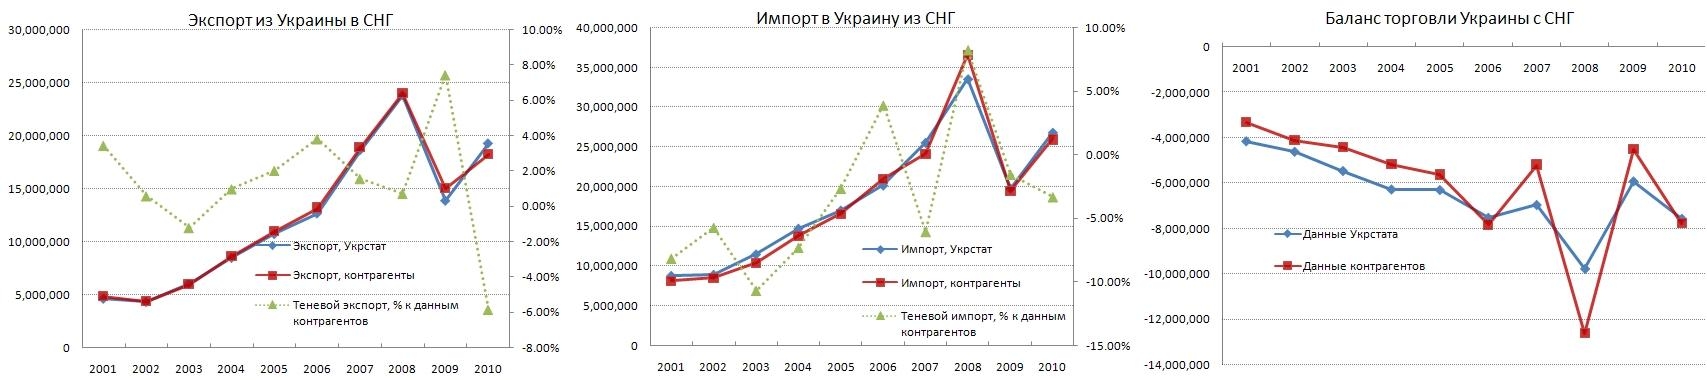 Экспорт, импорт и баланс торговли Украины